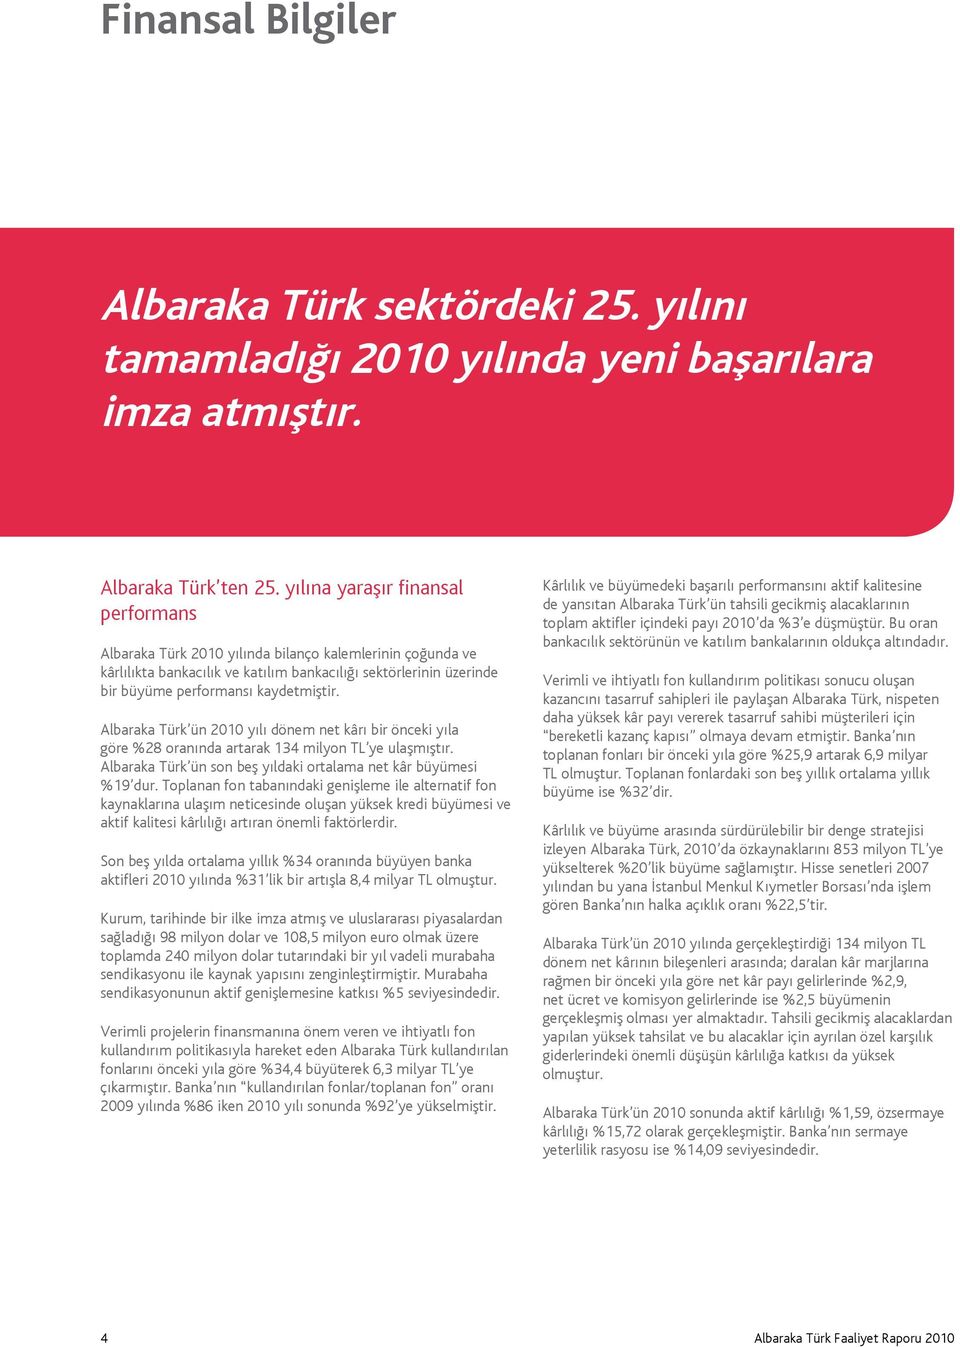 Albaraka Türk ün 2010 yılı dönem net kârı bir önceki yıla göre %28 oranında artarak 134 milyon TL ye ulaşmıştır. Albaraka Türk ün son beş yıldaki ortalama net kâr büyümesi %19 dur.